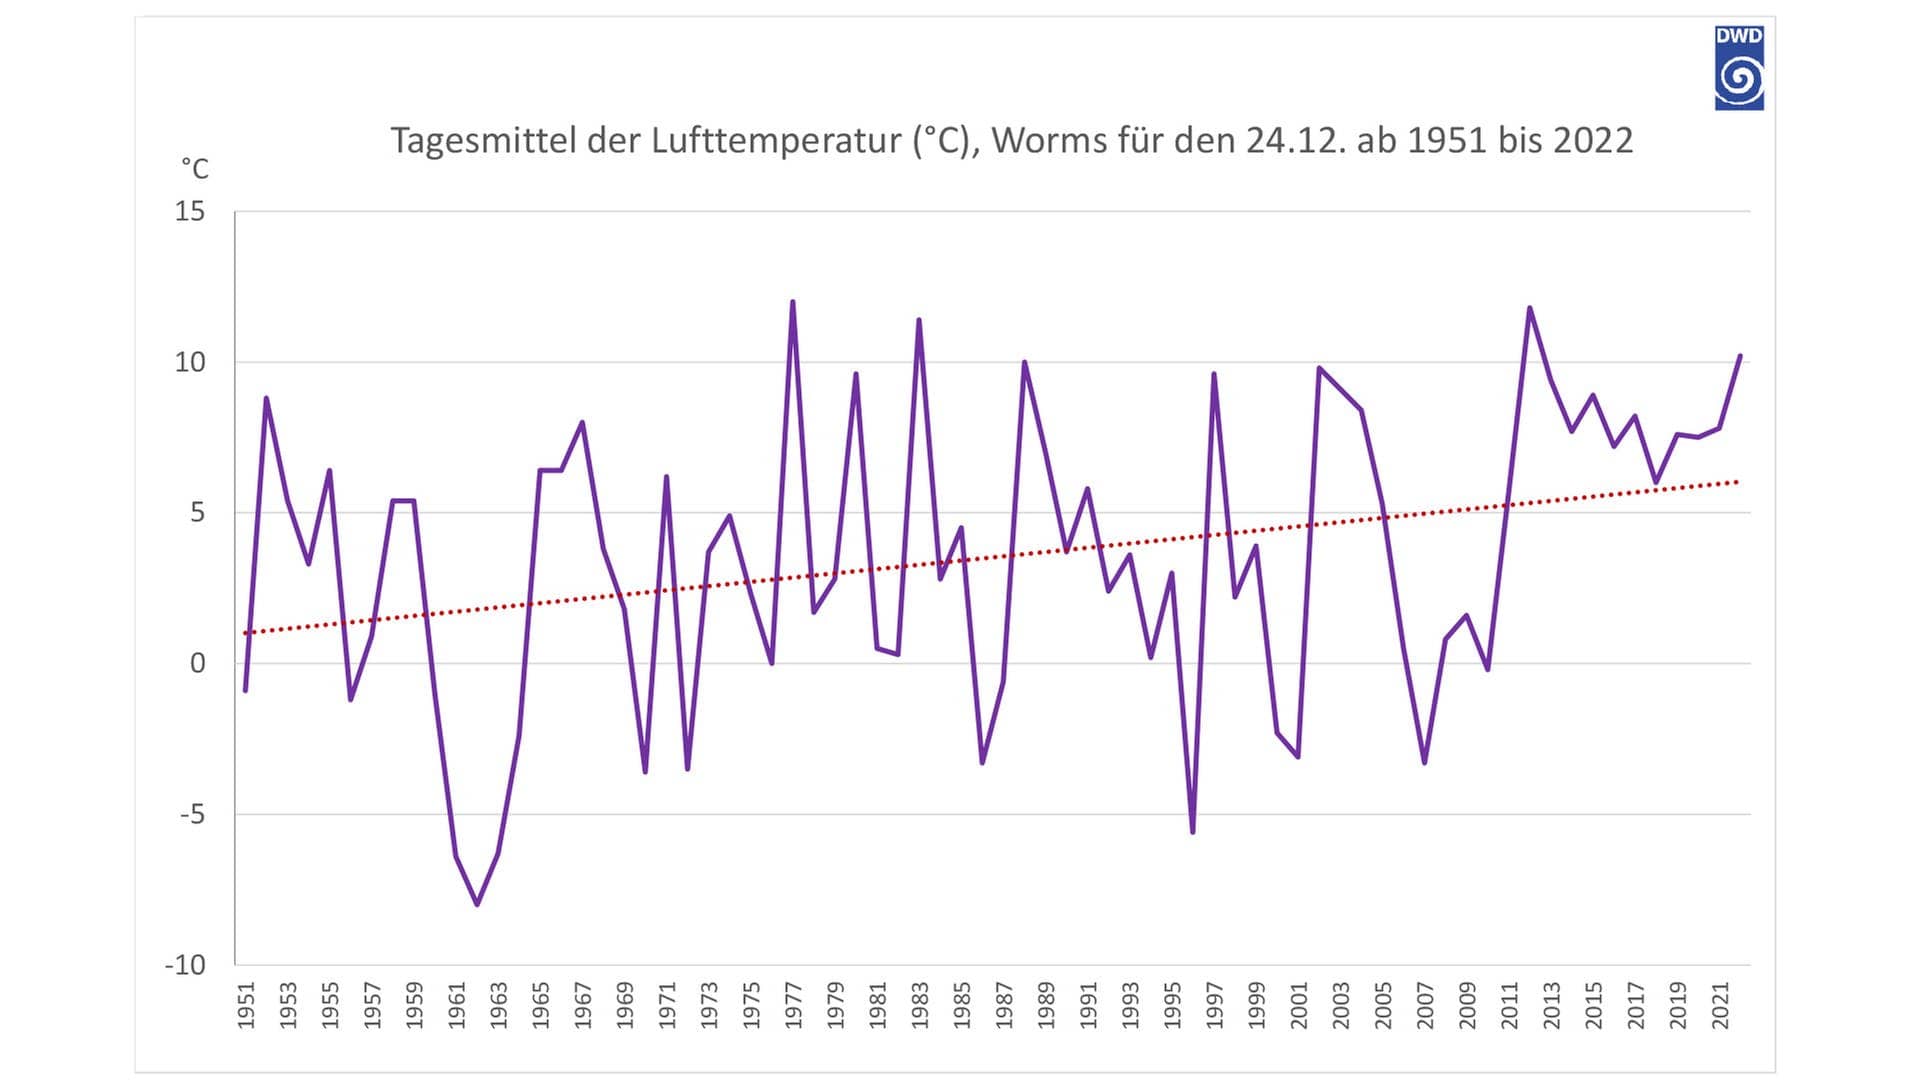 Tagesmittel der Lufttemperatur (°C), Worms für den 24.12. ab 1951 bis 2022